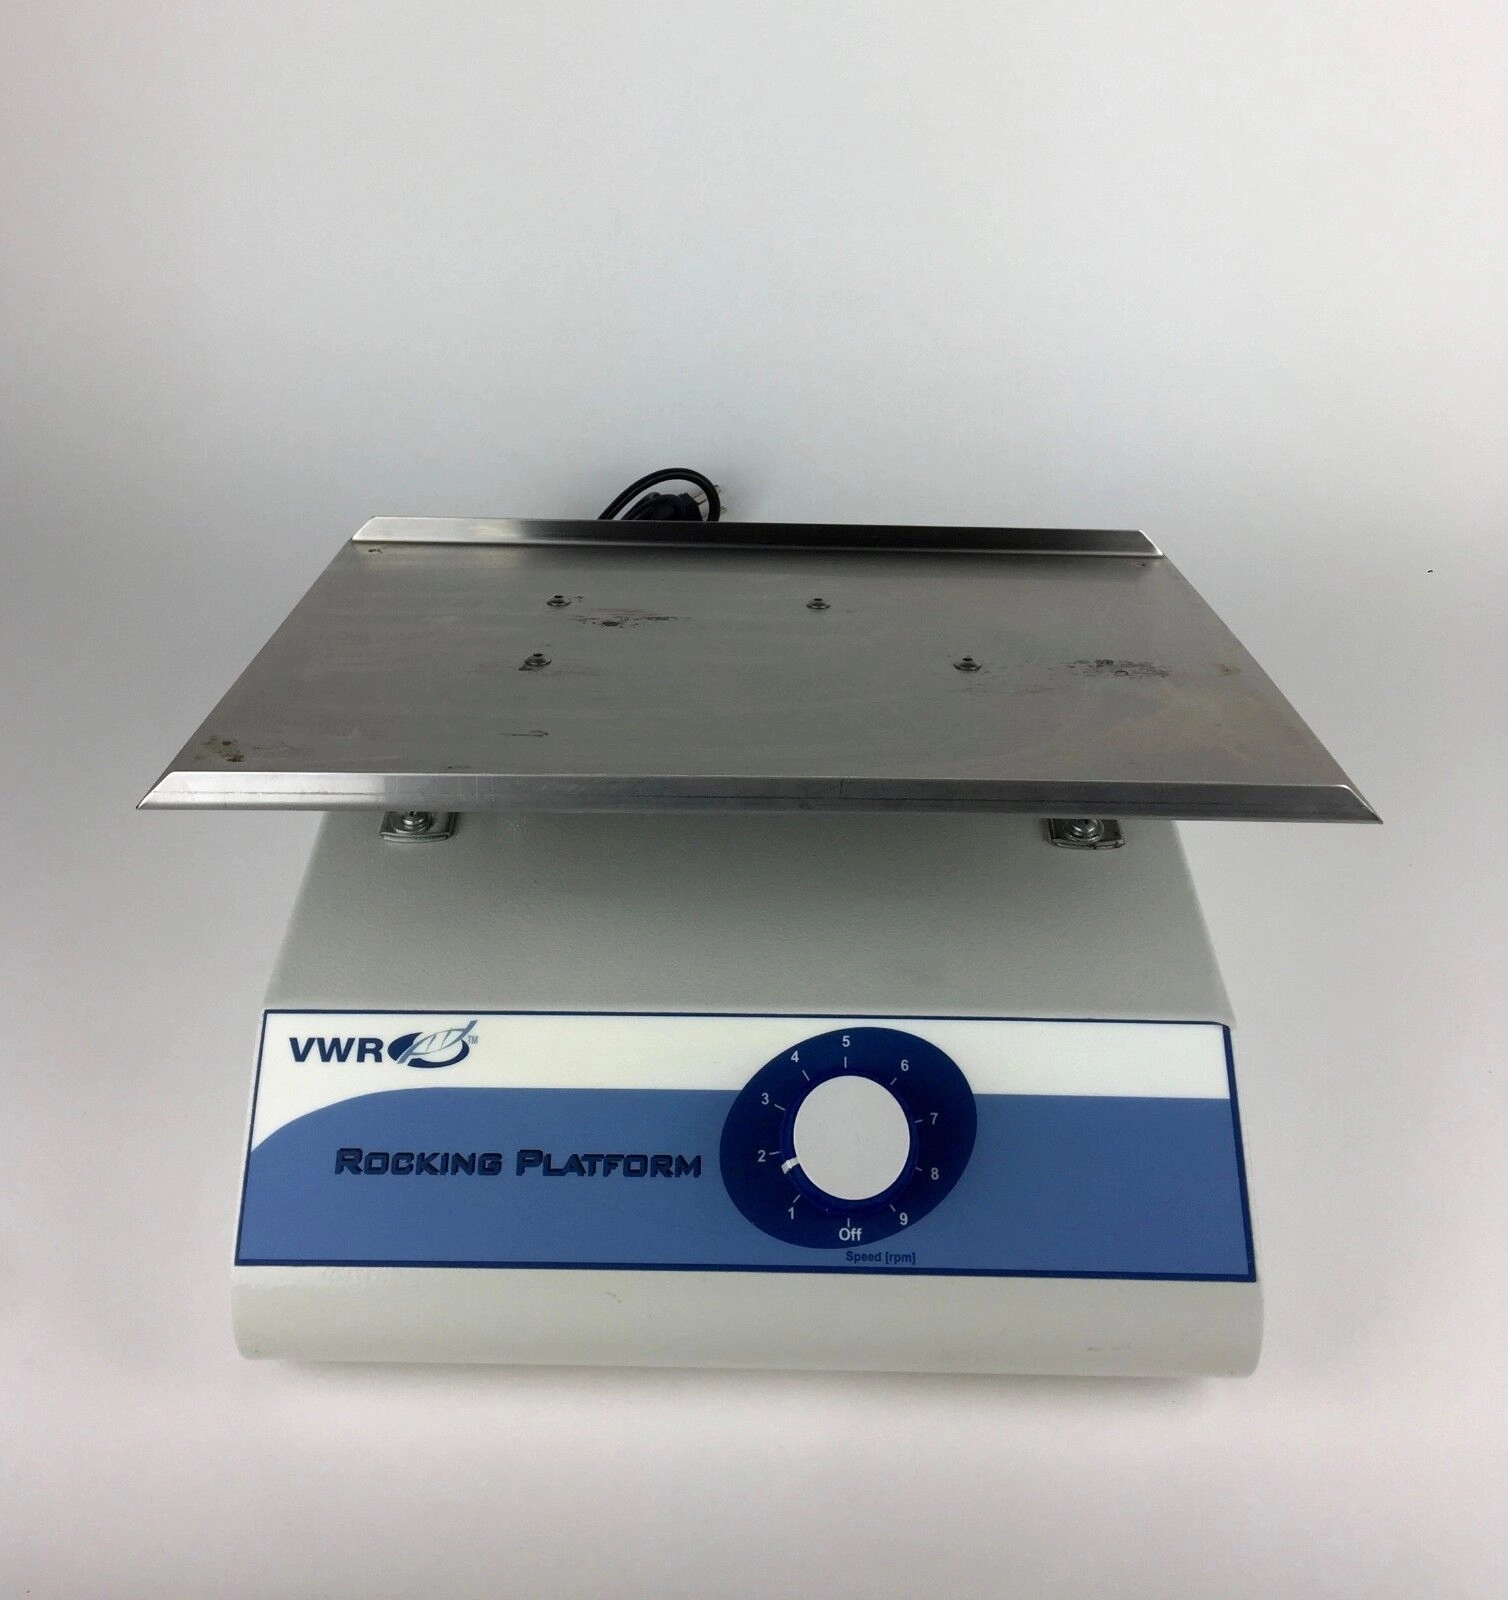 VWR Rocking Platform Model 100